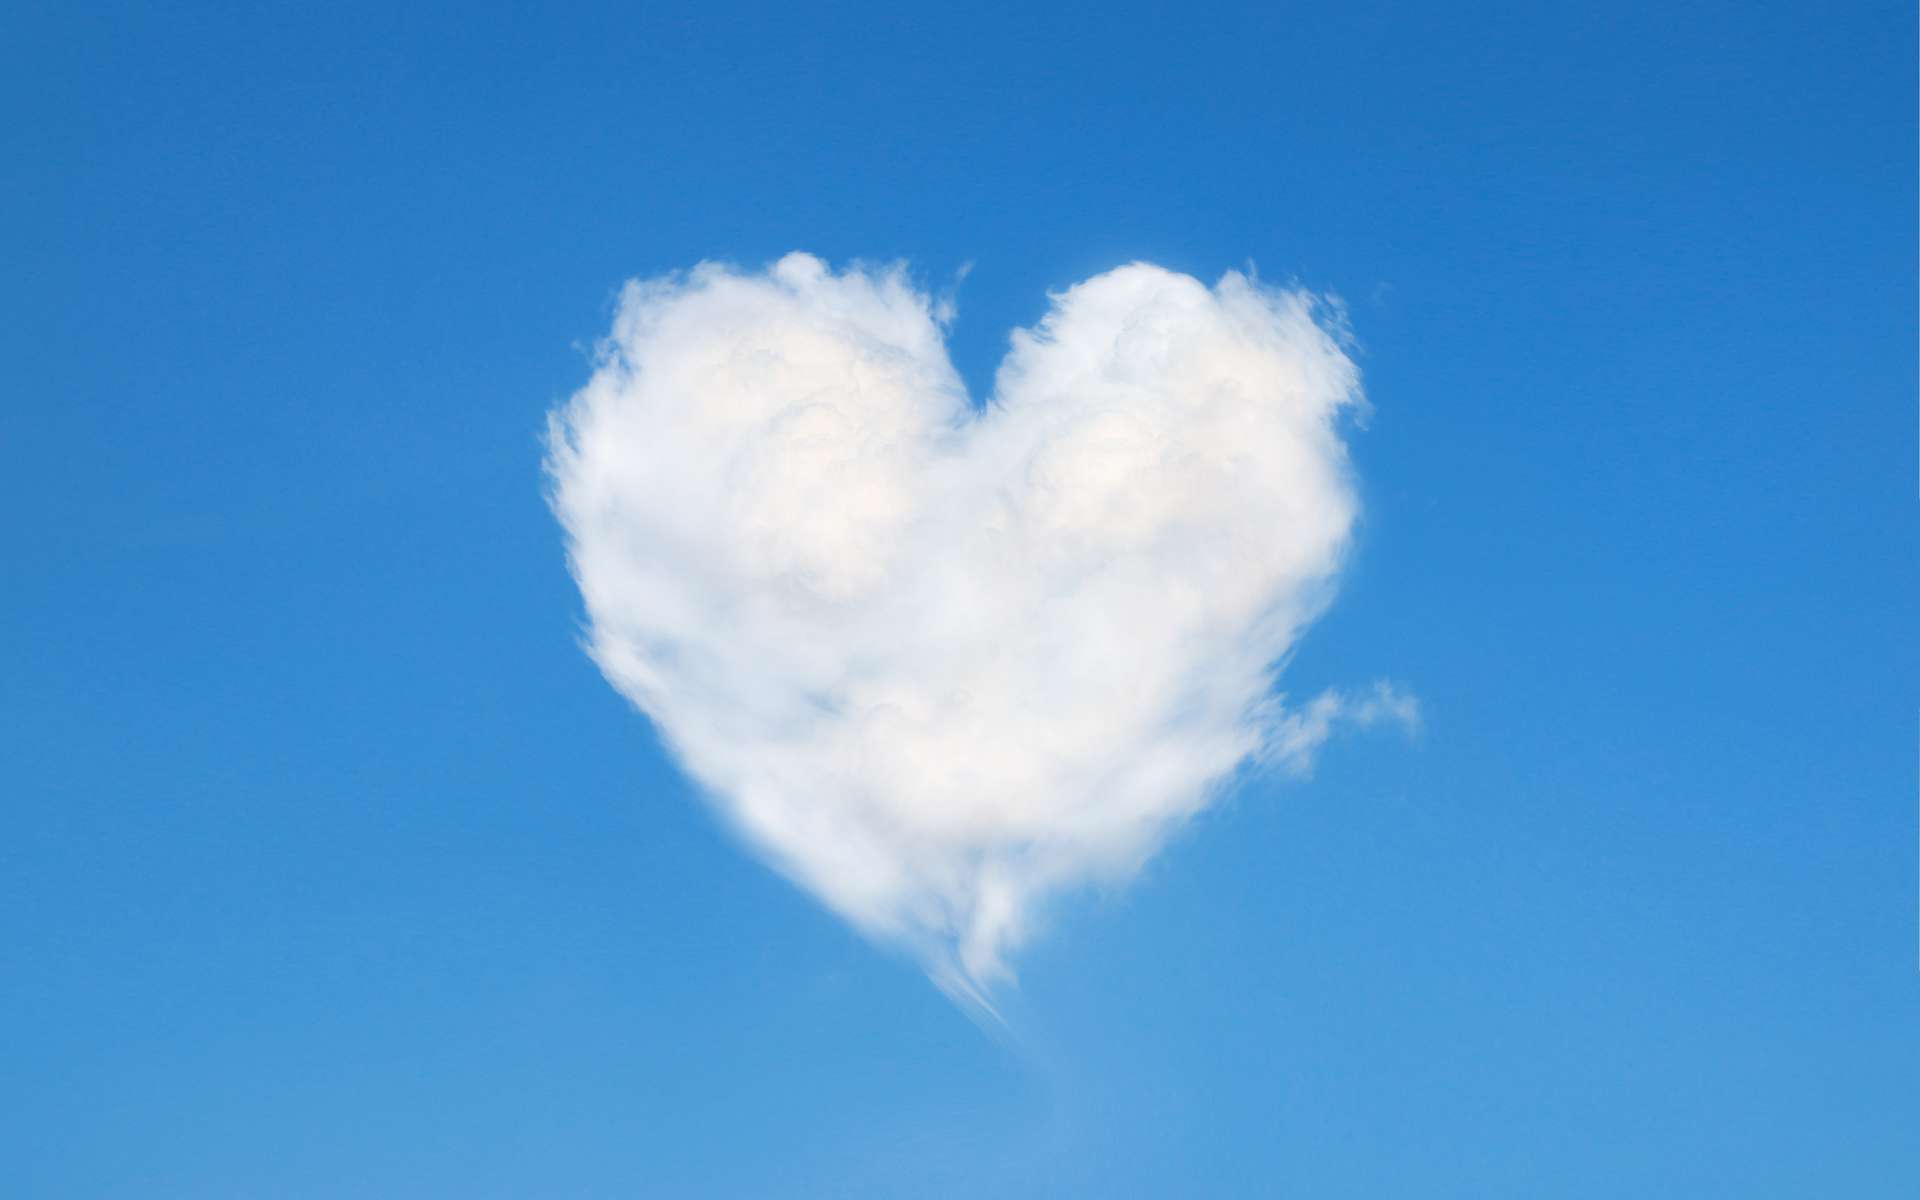 Les nuages en forme de coeur existent-ils vraiment ?